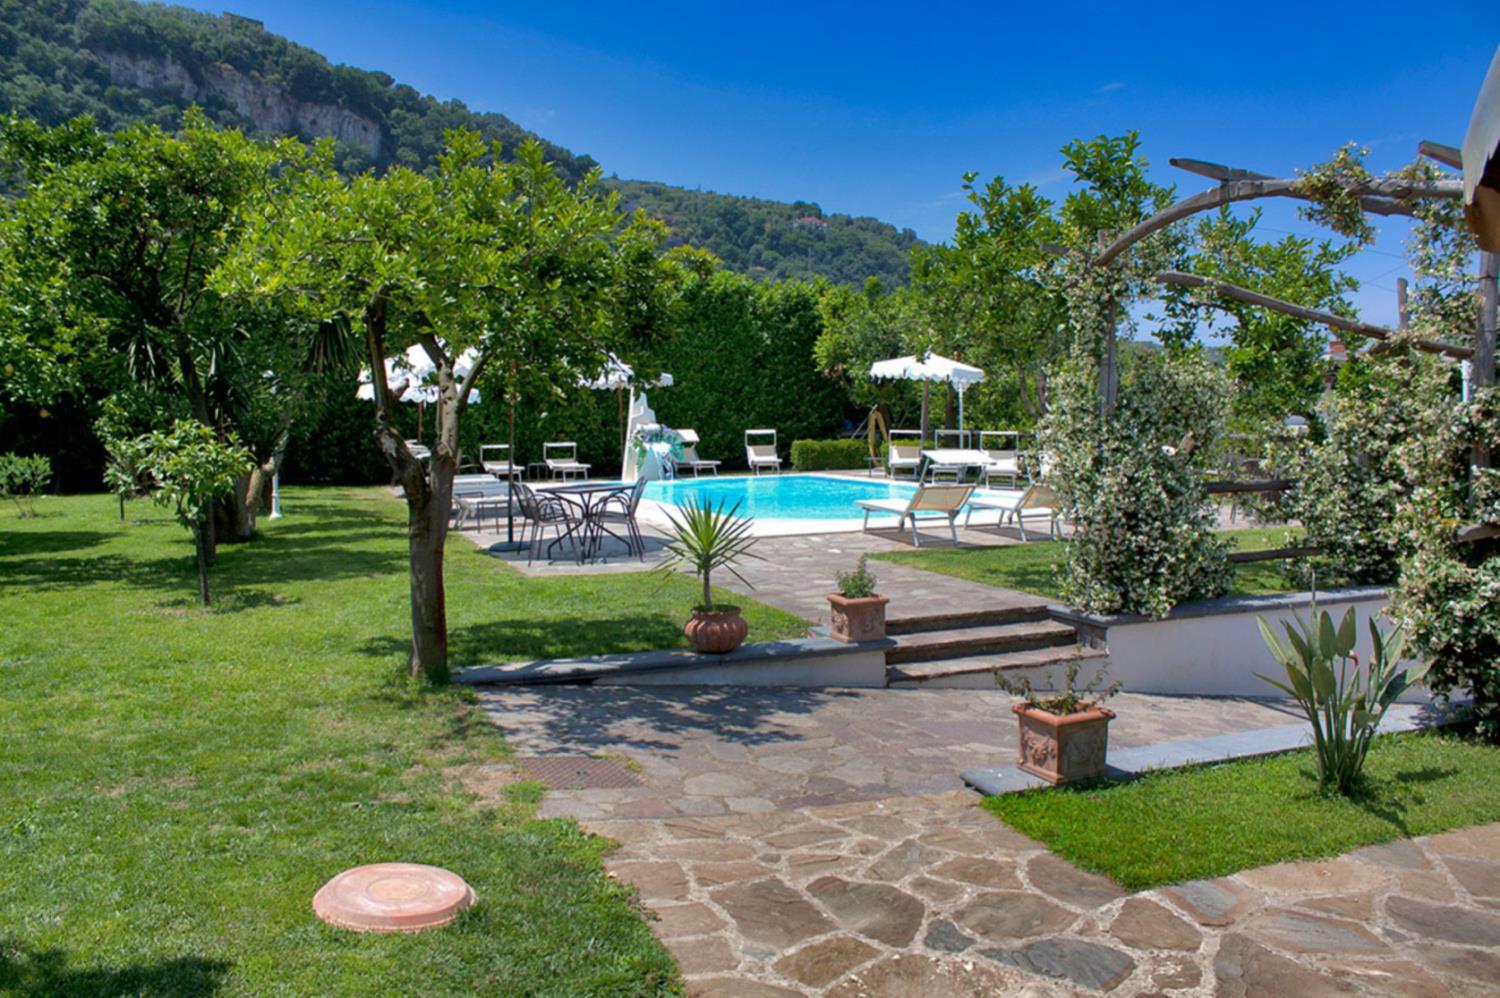 Woning Casa Limoneto with shared pool Sorrento 1